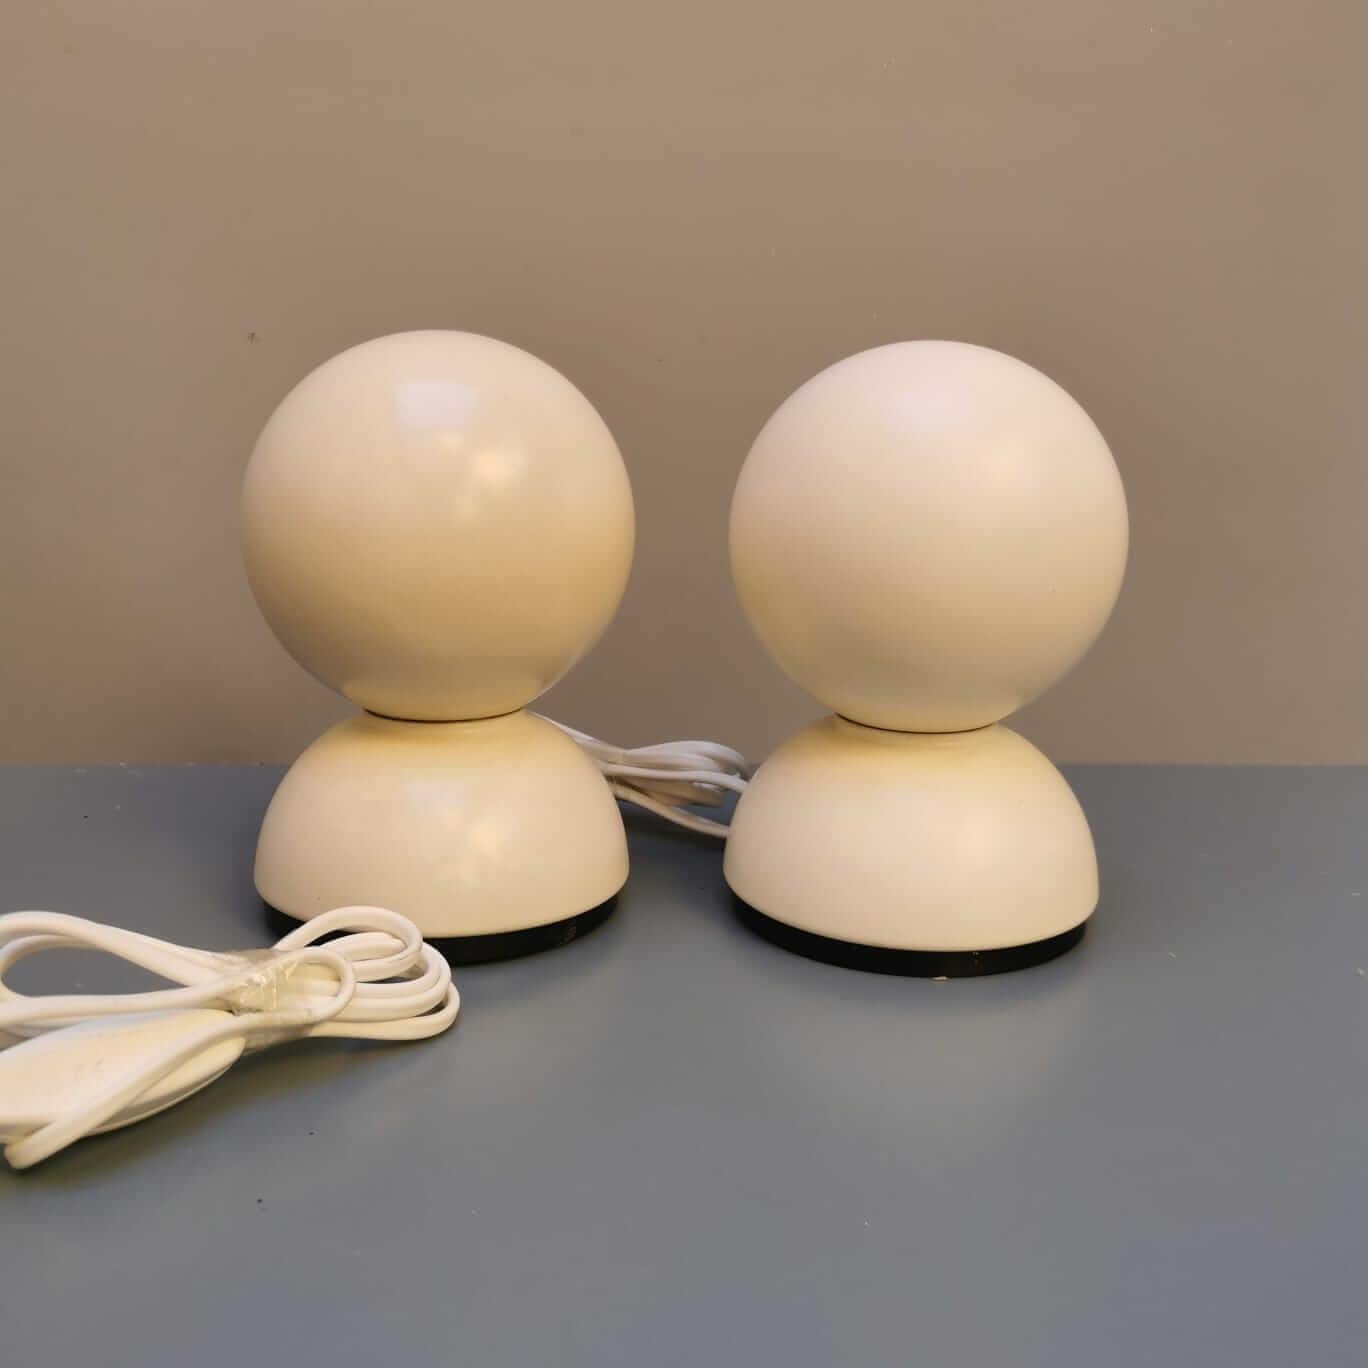 Les deux lampes iconiques Eclisse conçues par Vico Magistretti témoignent d'une élégance intemporelle et d'un design innovant. Créées dans les années 1960, ces lampes sont devenues des icônes dans le monde de l'éclairage. Leur forme distinctive et